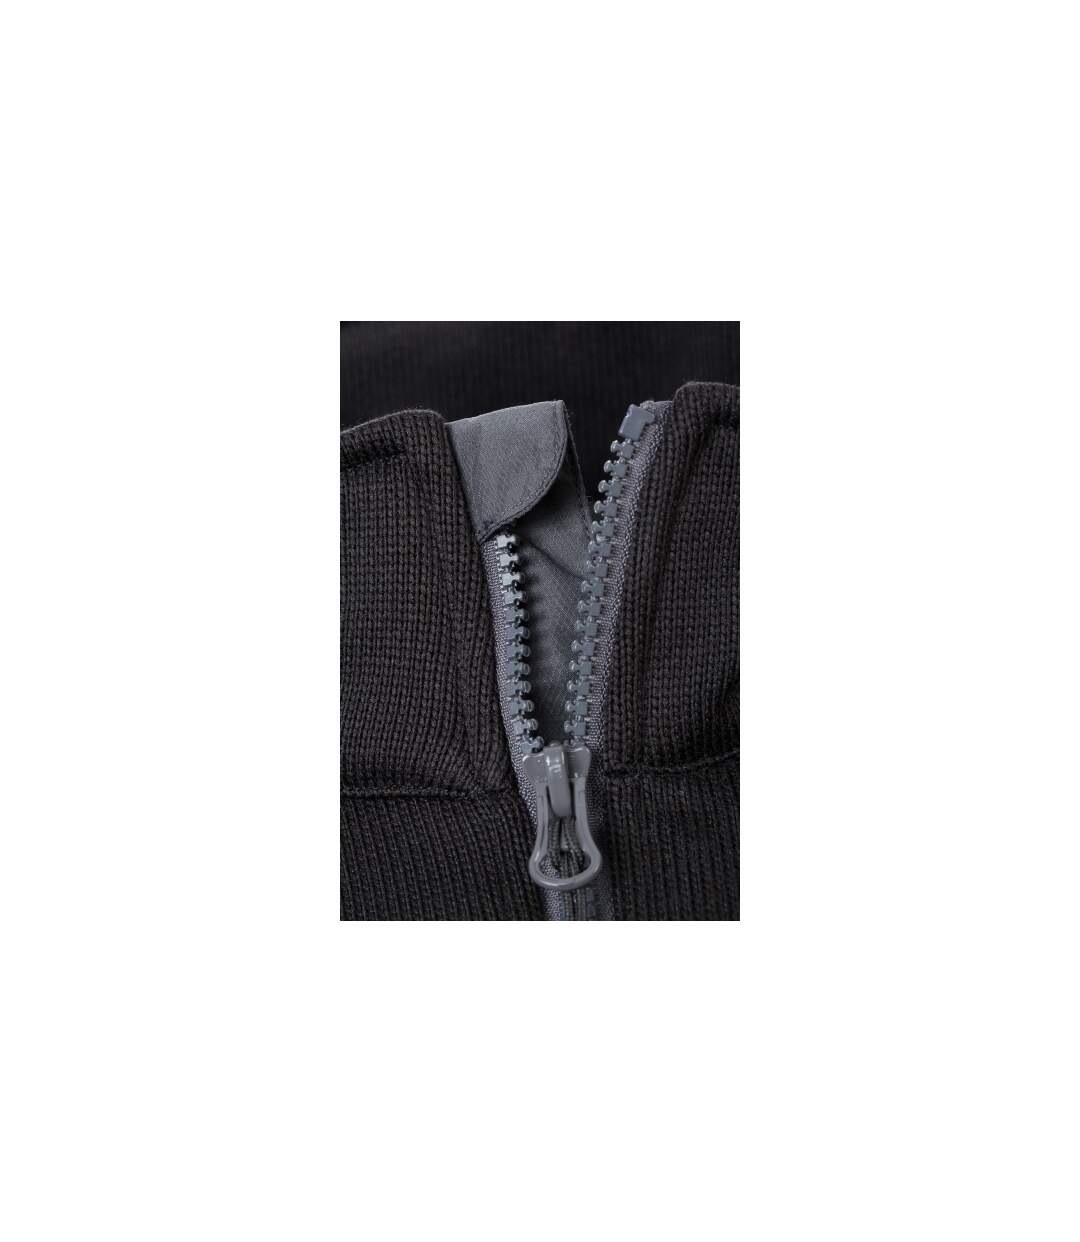 Veste tricot polaire HOMME JN591 - noir